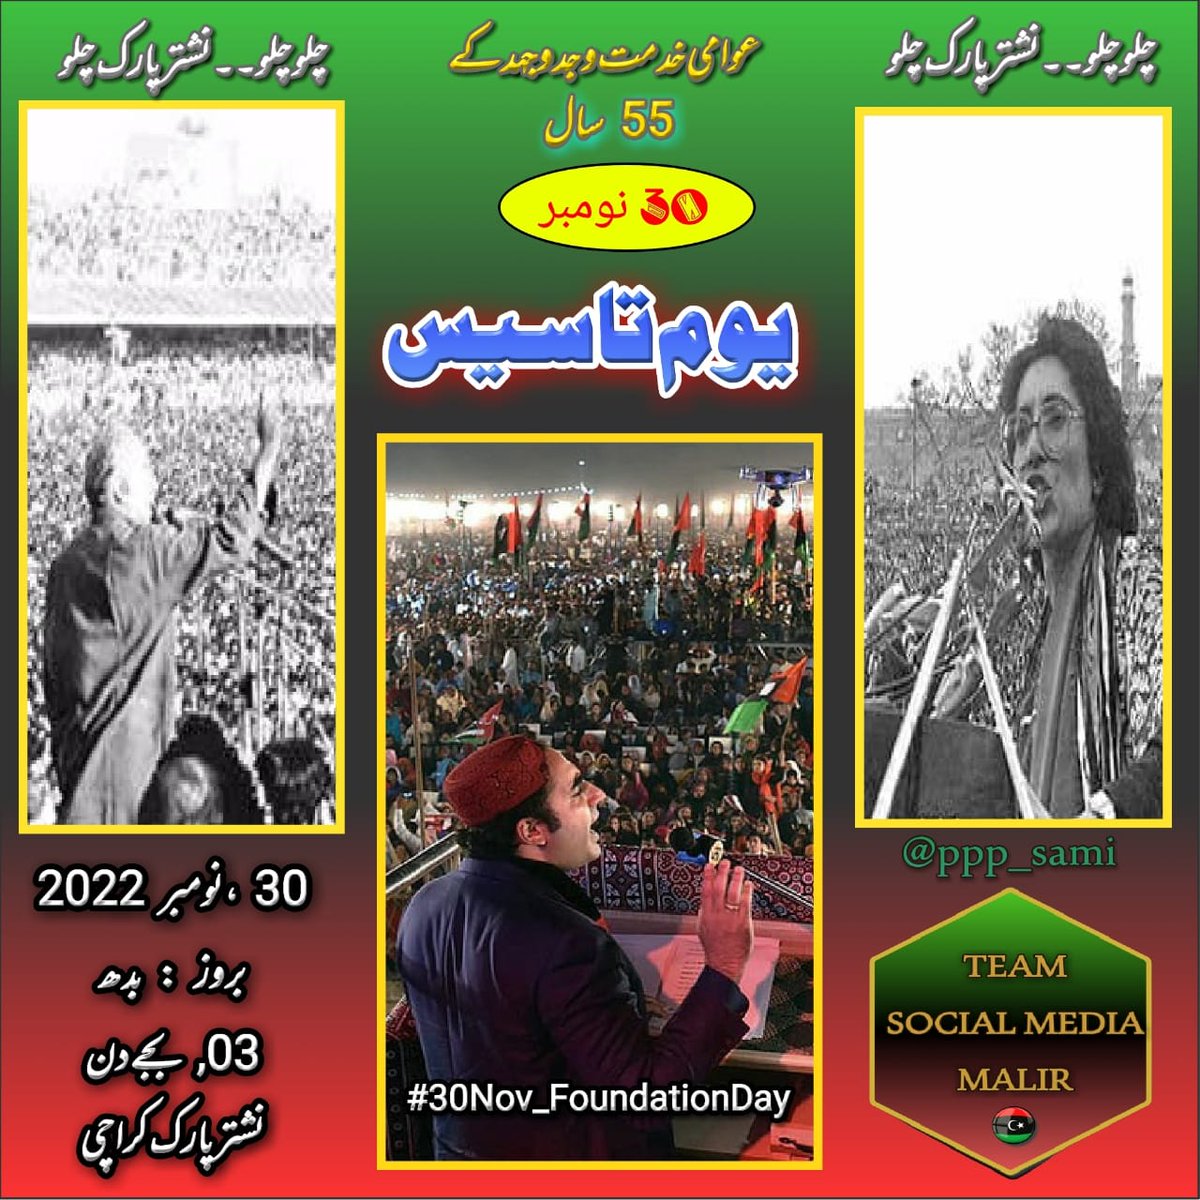 #30Nov_FoundationDay
@BBhuttoZardari 
@CM_Sindh 
@MPASajidJokhio 
@SalmanAMurad1 
@NisarKhero 
@WaqarMehdiPPP1